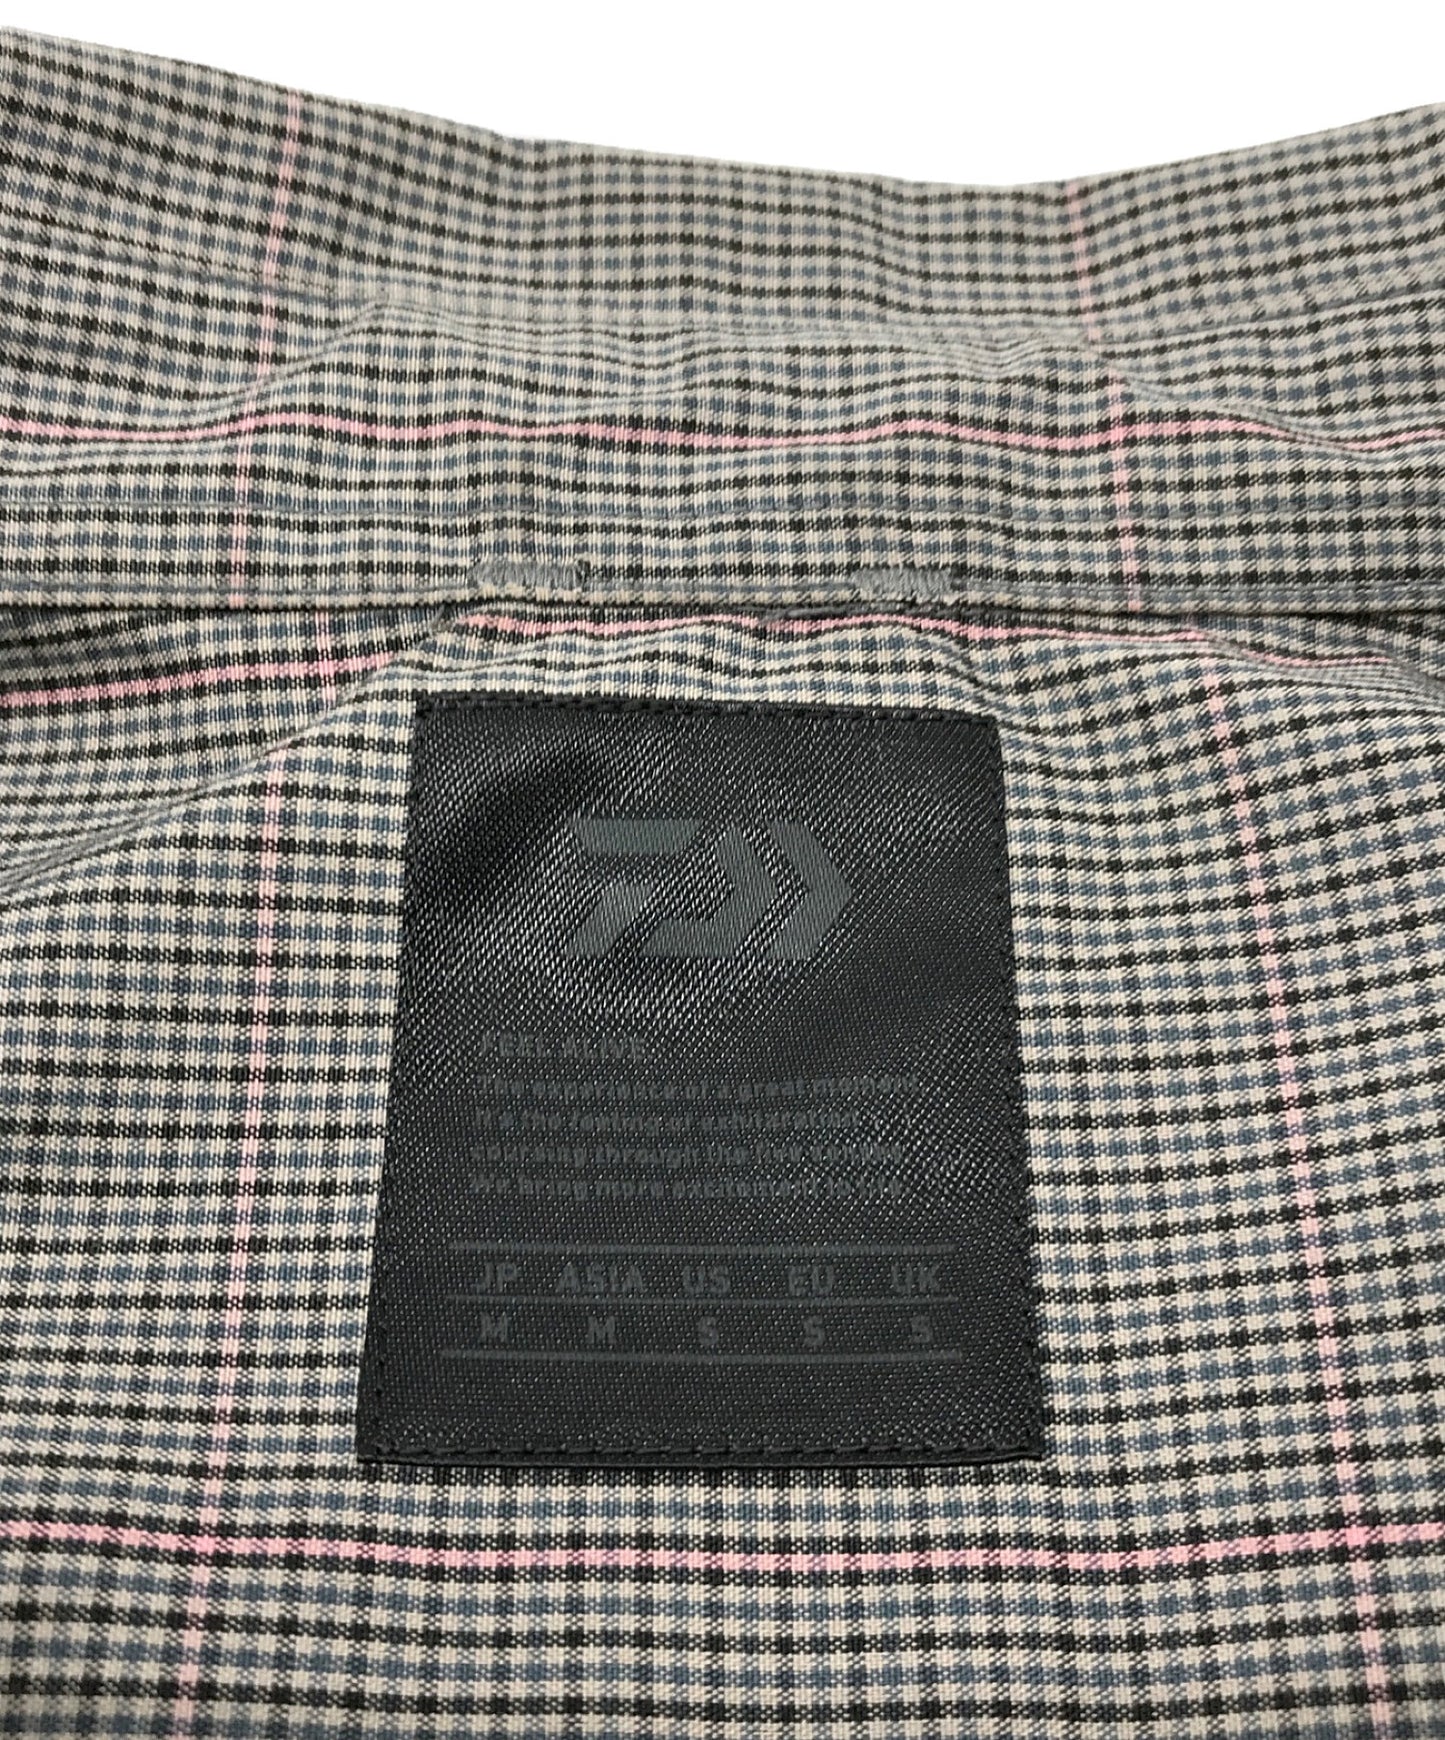 Daiwa Pier39 기술 일반 칼라 S/S 셔츠 짧은 슬리브 셔츠 셔츠 BE-84022